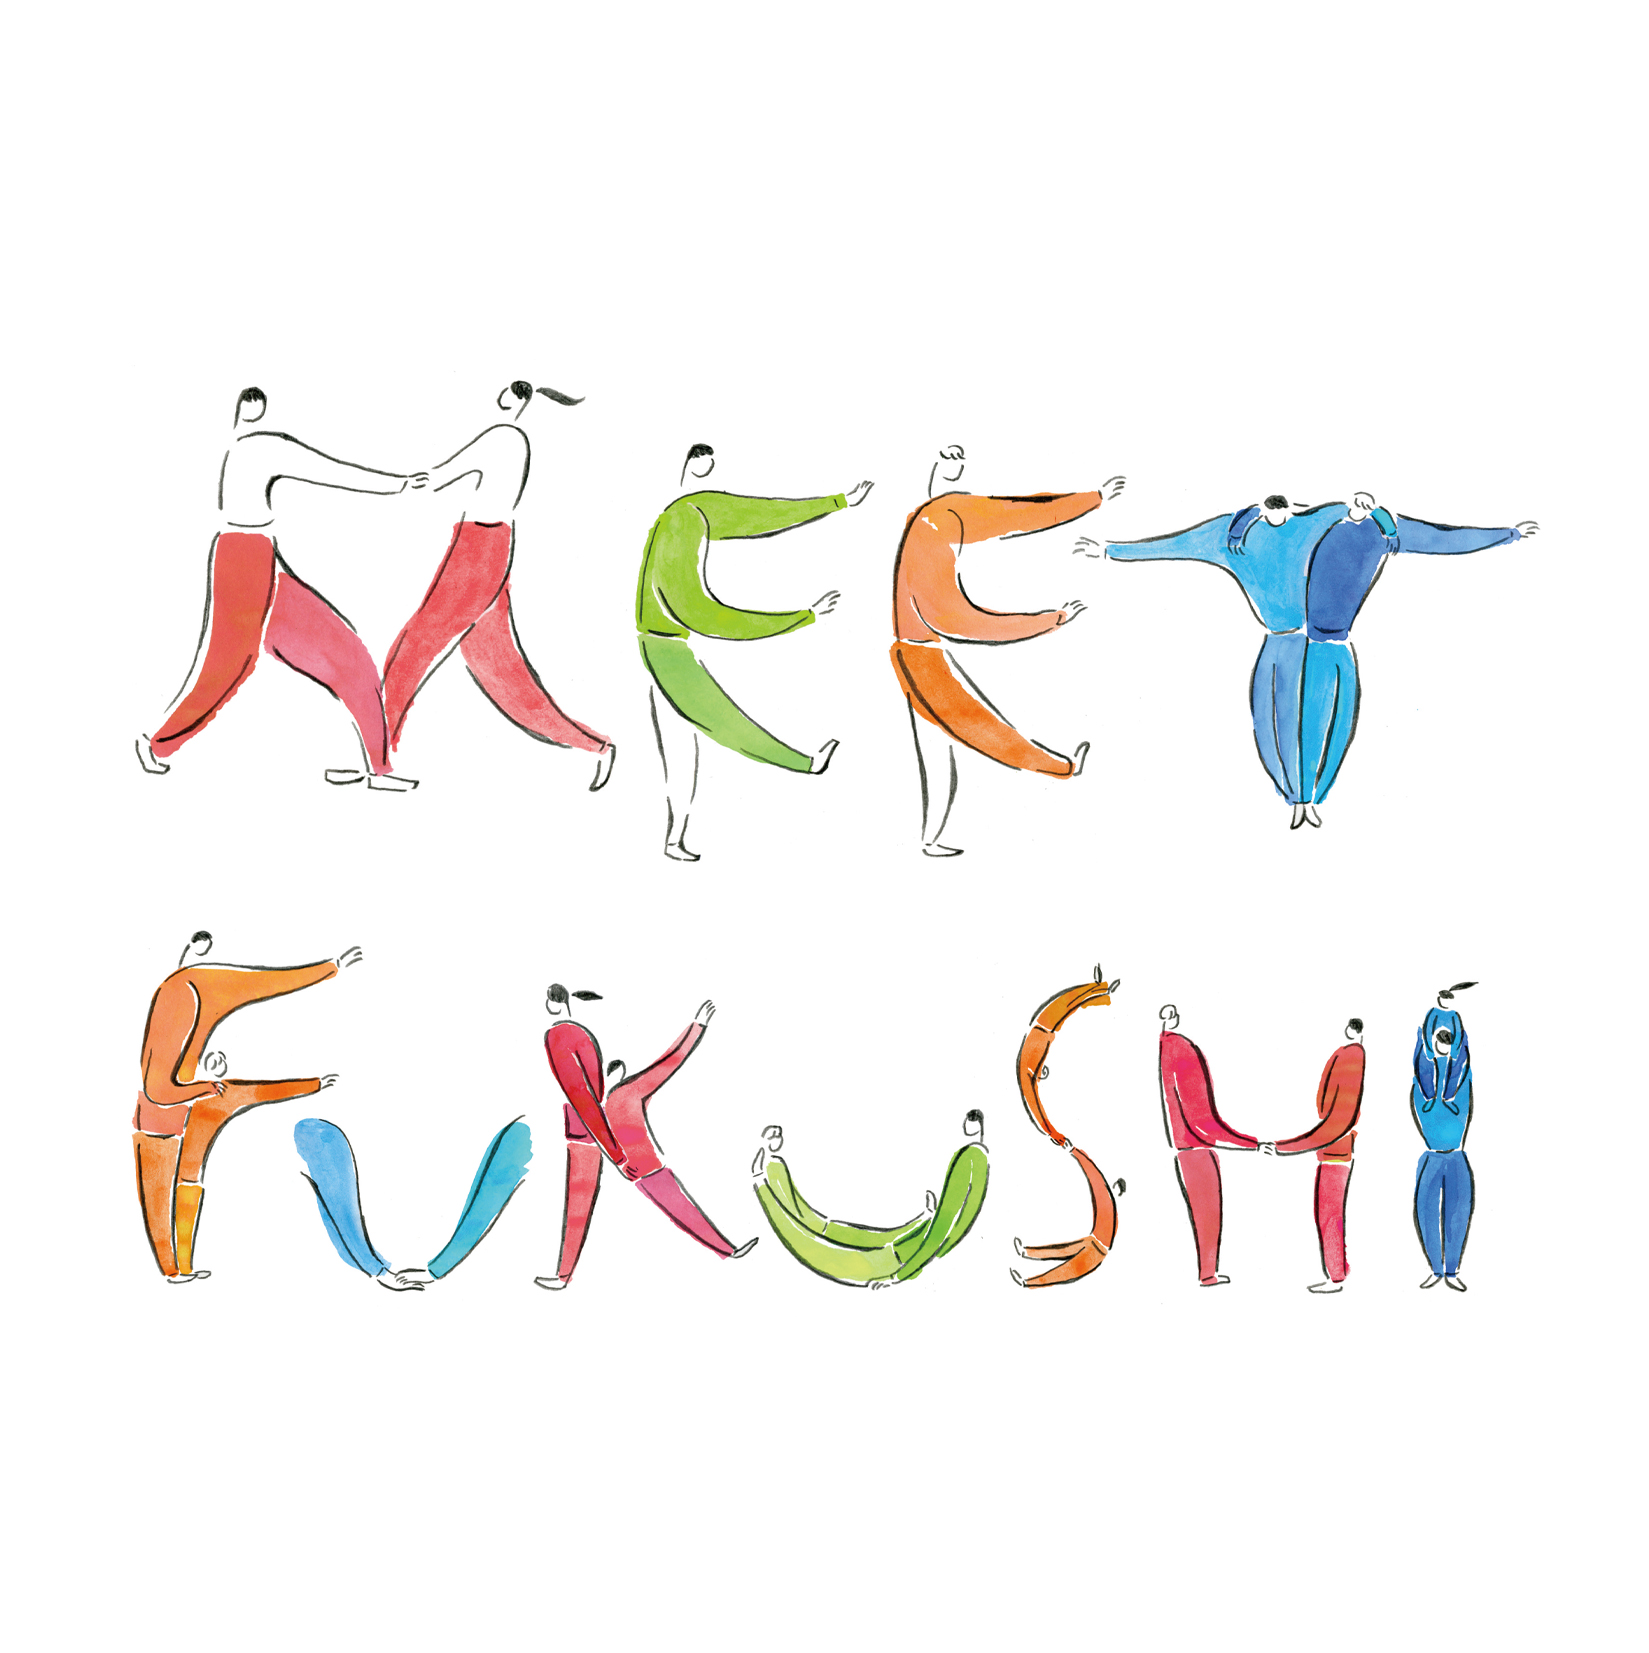 meetfukushi